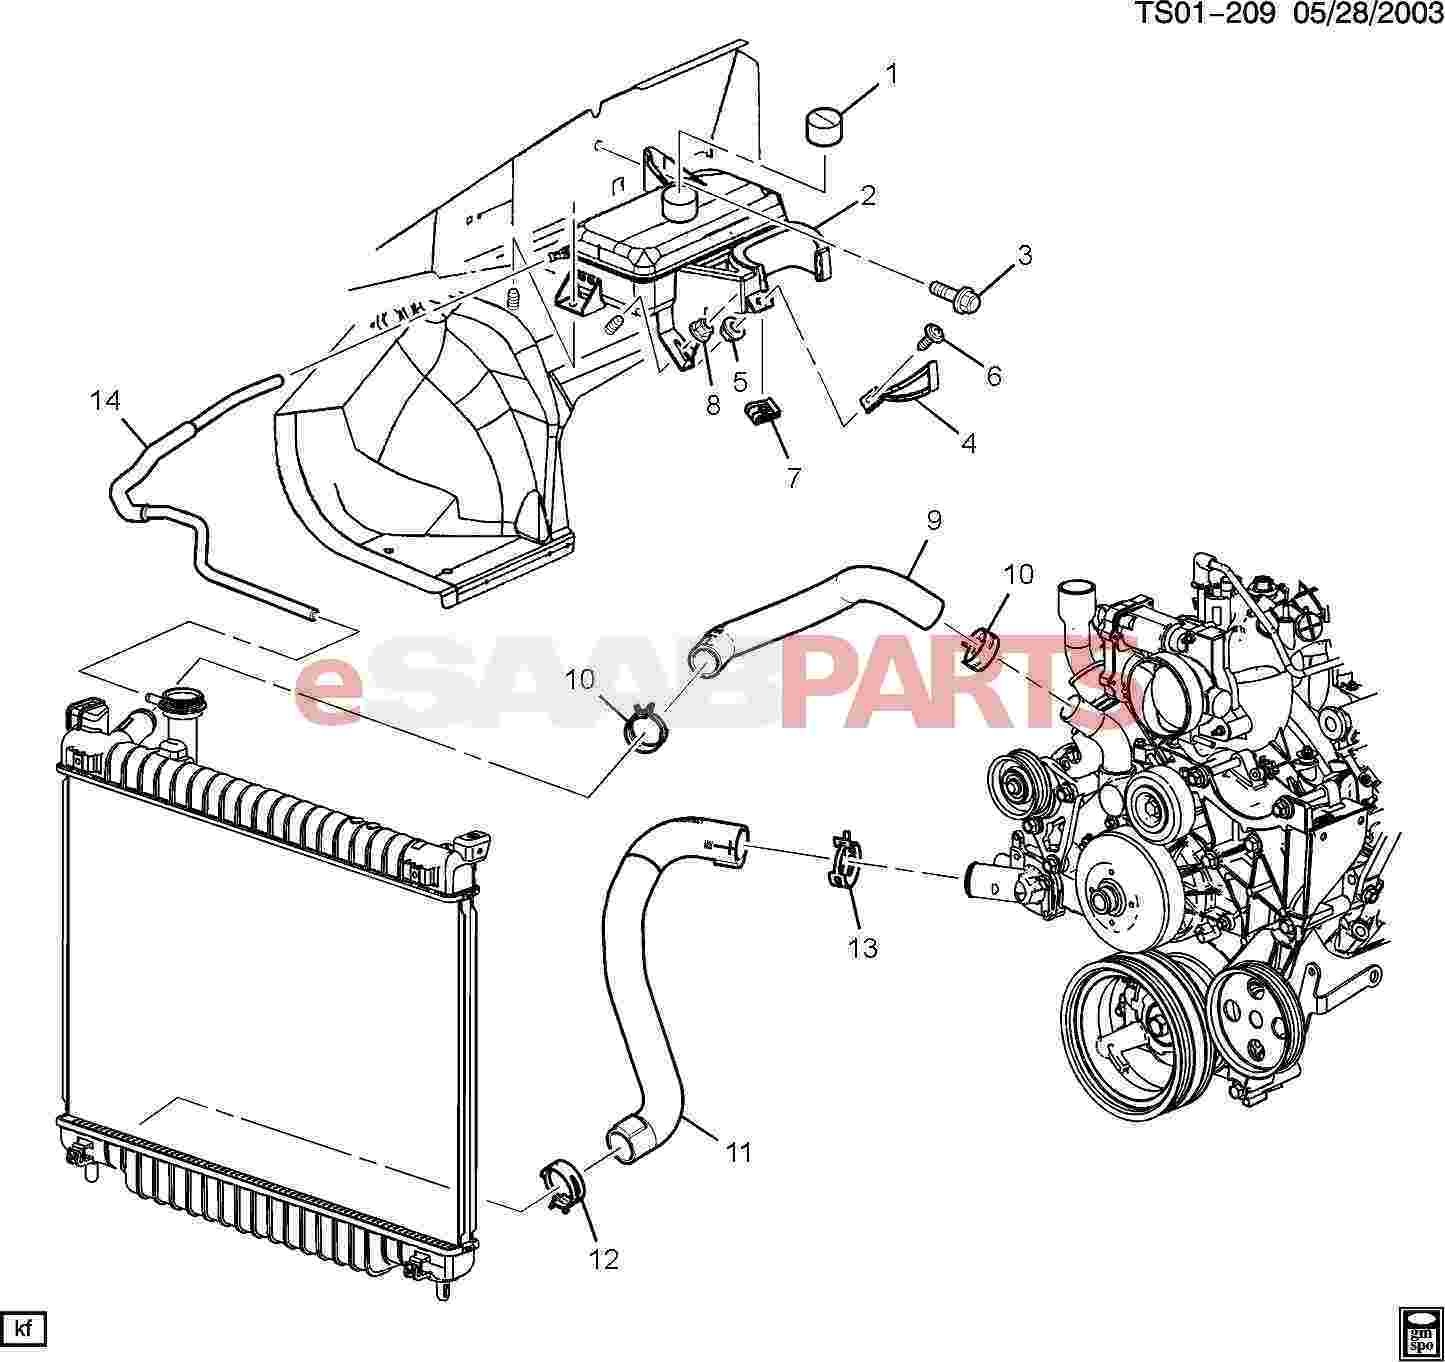 Saab 9 5 Engine Diagram 2 2 Esaabparts Saab 9 7x Engine Parts Heater Hoses Radiator Of Saab 9 5 Engine Diagram 2 2